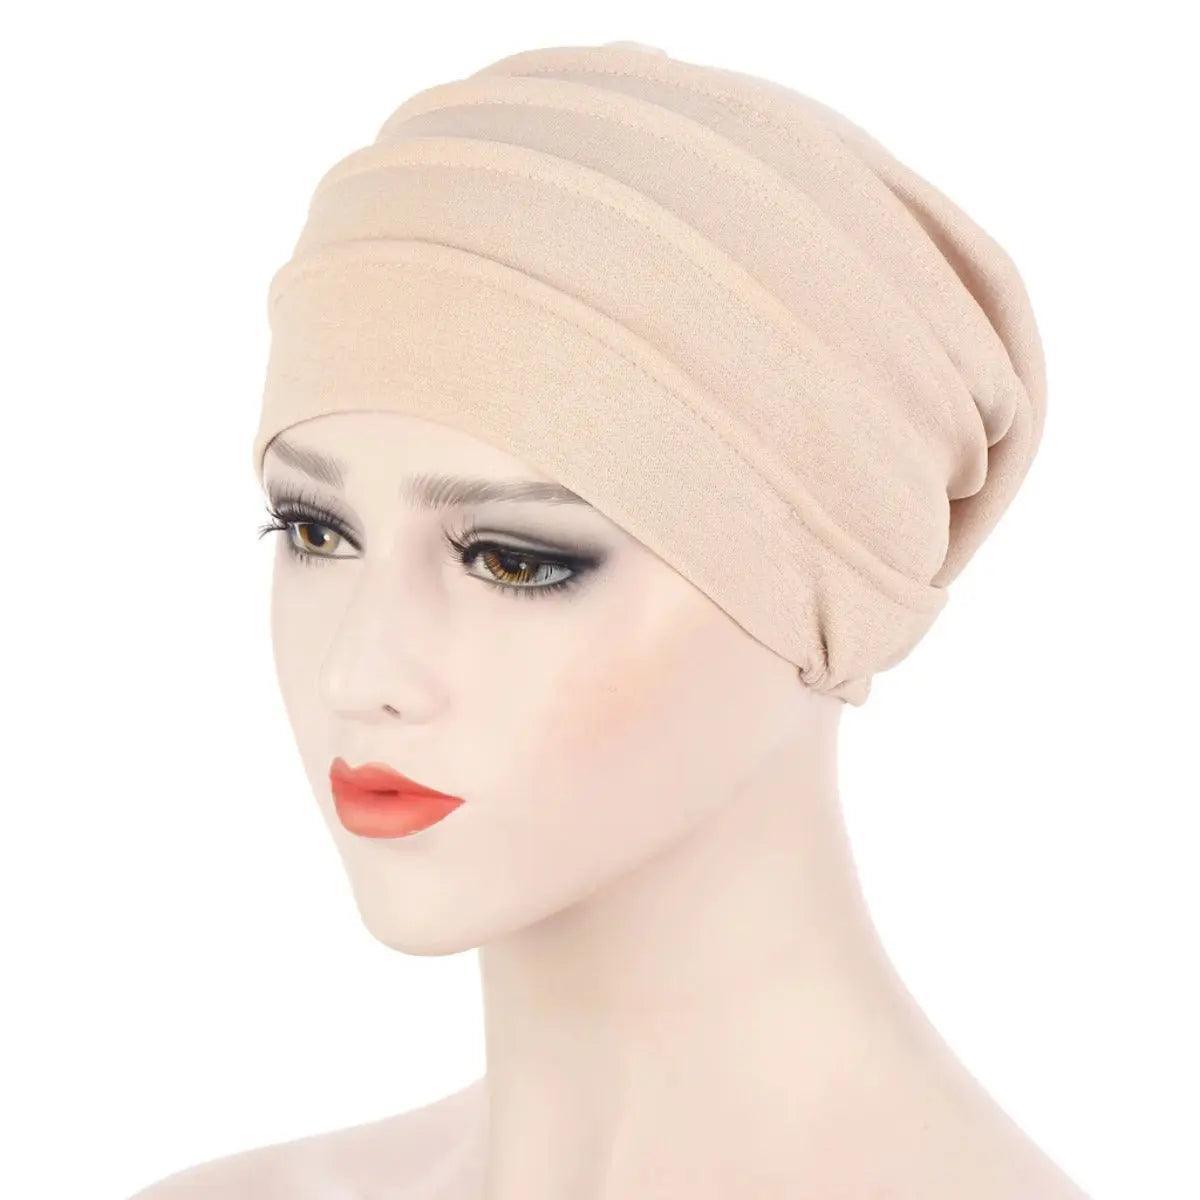 MH031 Solid Color Slub Cotton Undercap Hijab - Mariam's Collection